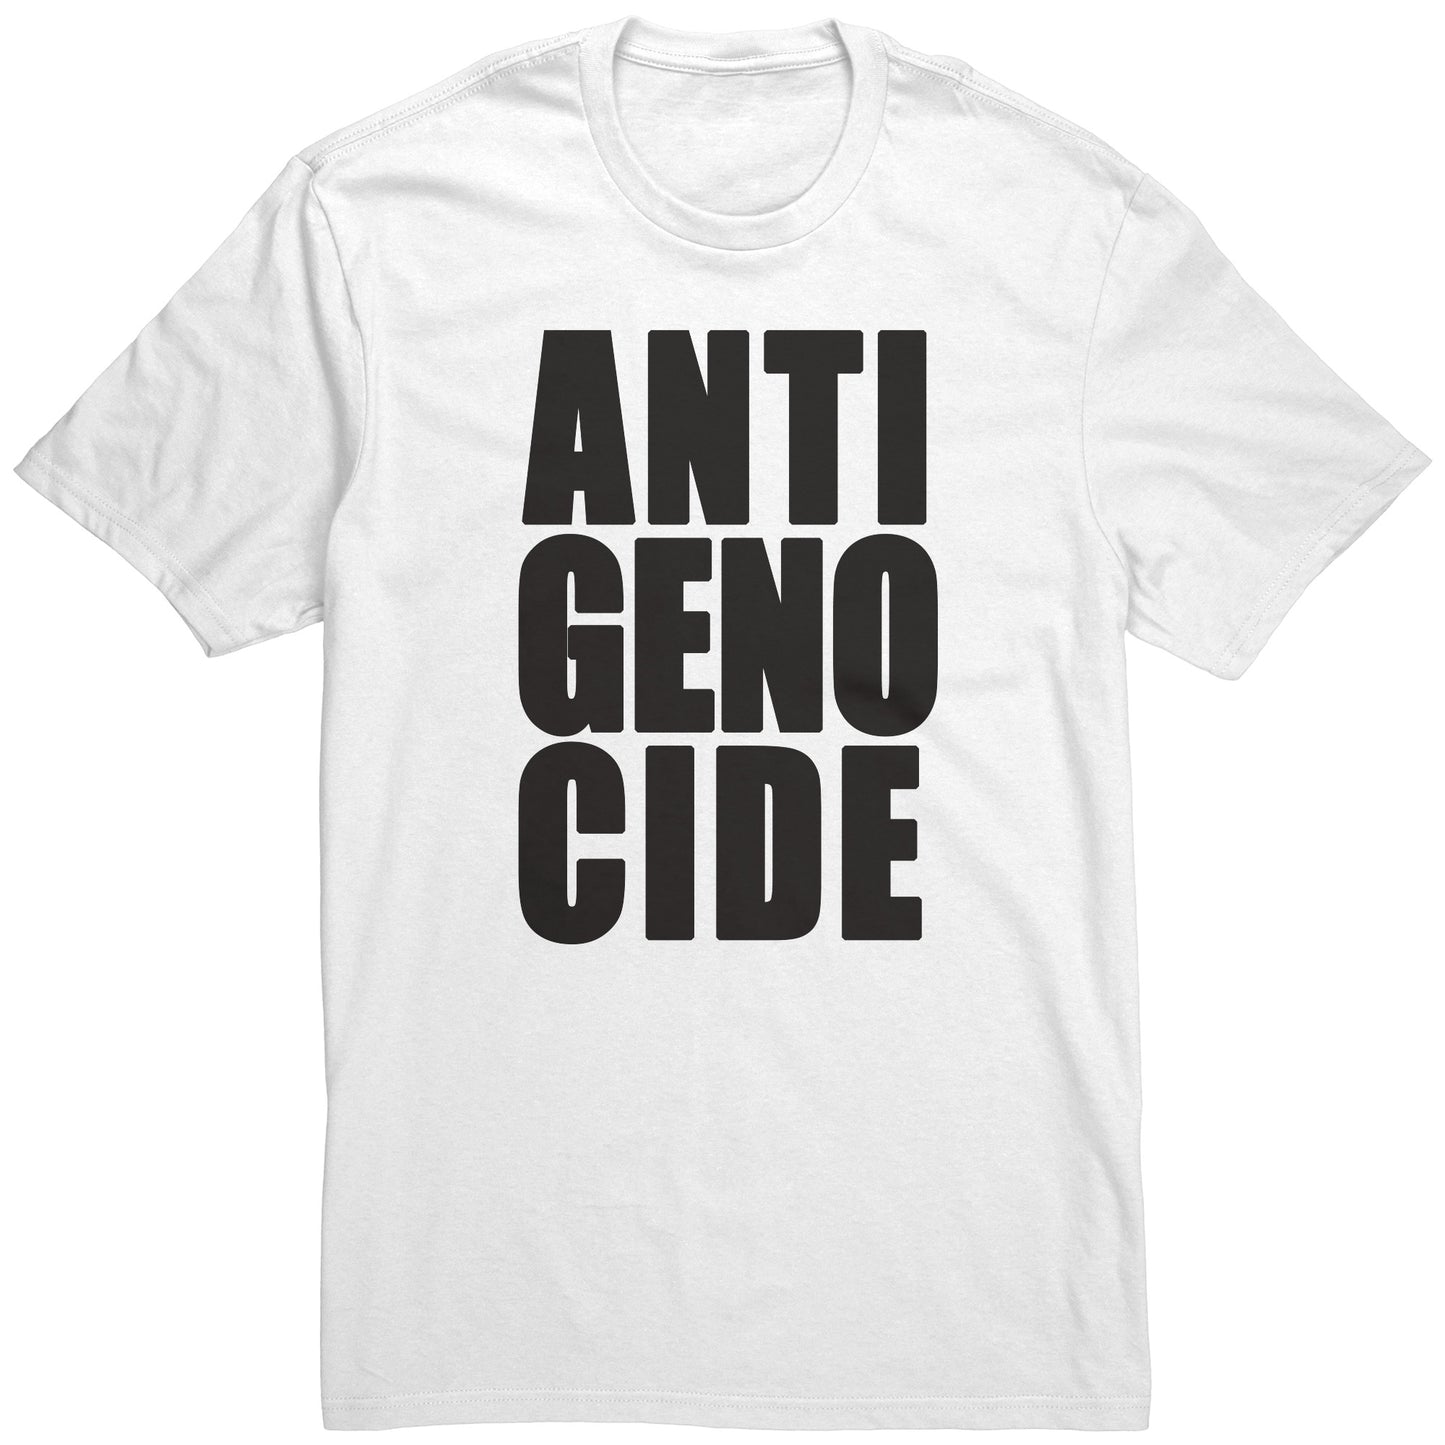 Adult Tee "Anti Genocide" (black print)